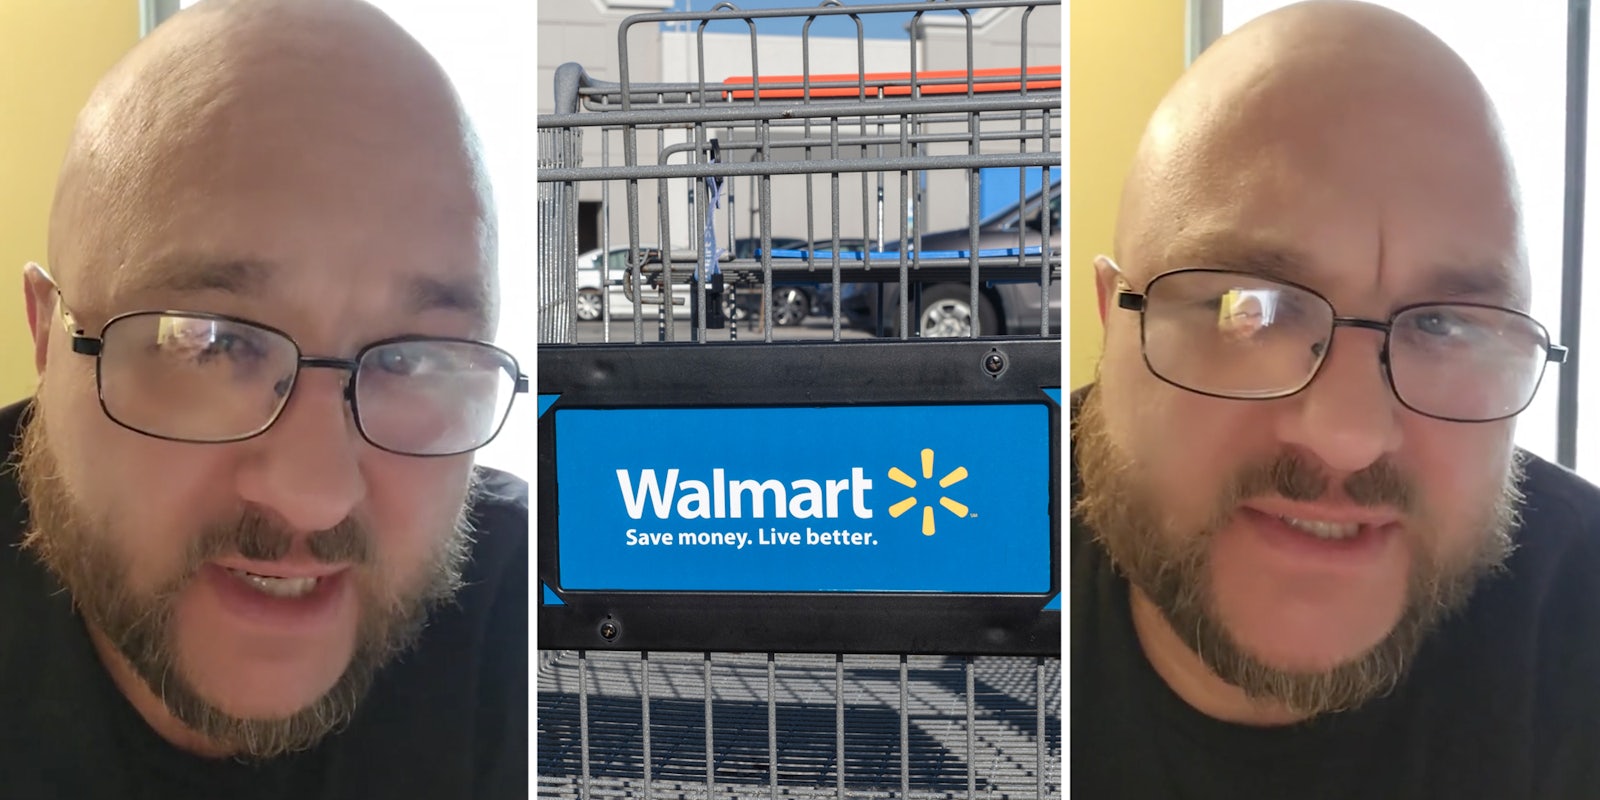 Man(l+r), Walmart cart(c)